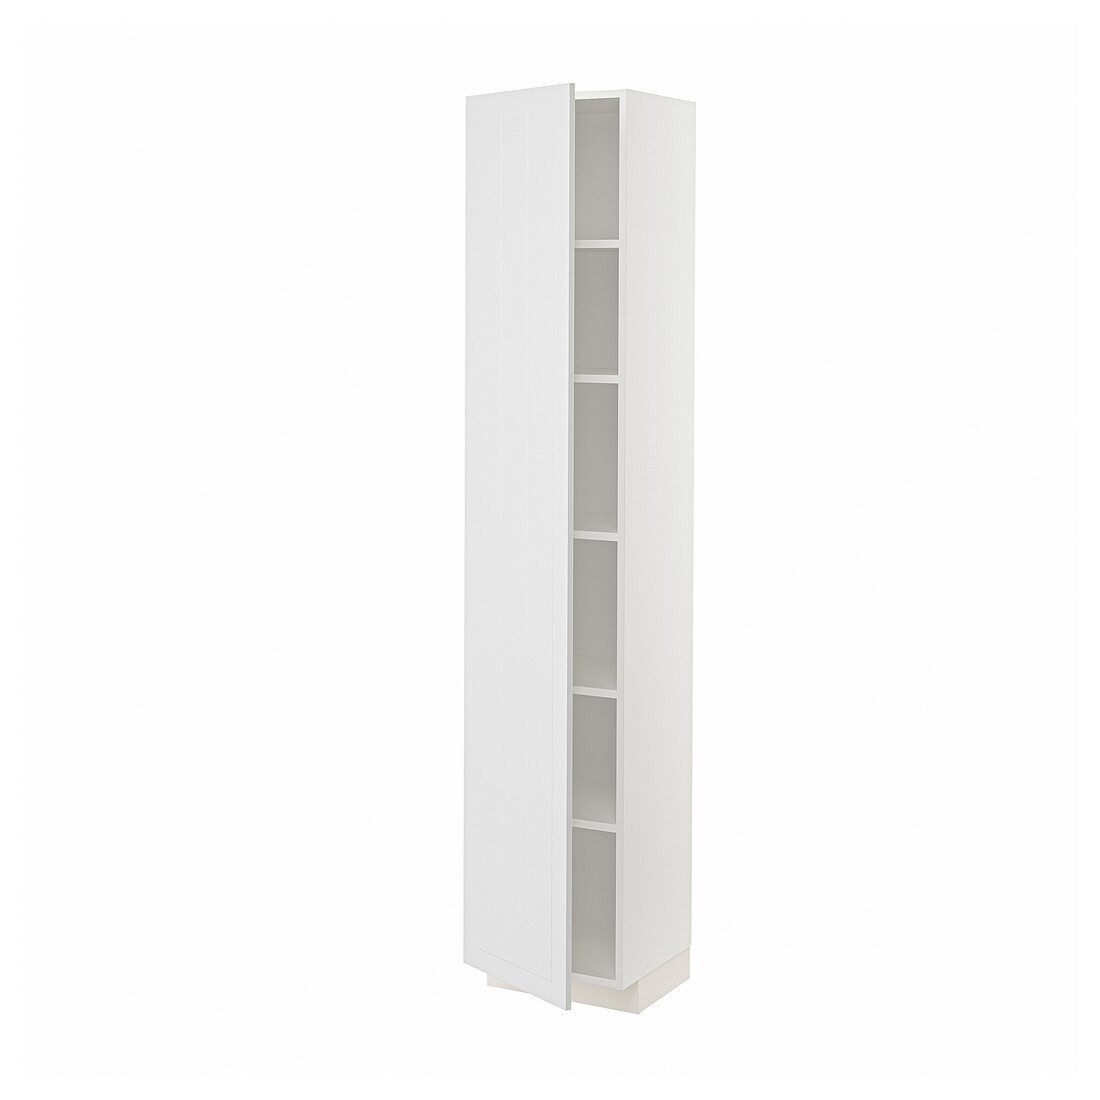 METOD МЕТОД Висока шафа з полицями, білий / Stensund білий, 40x37x200 см